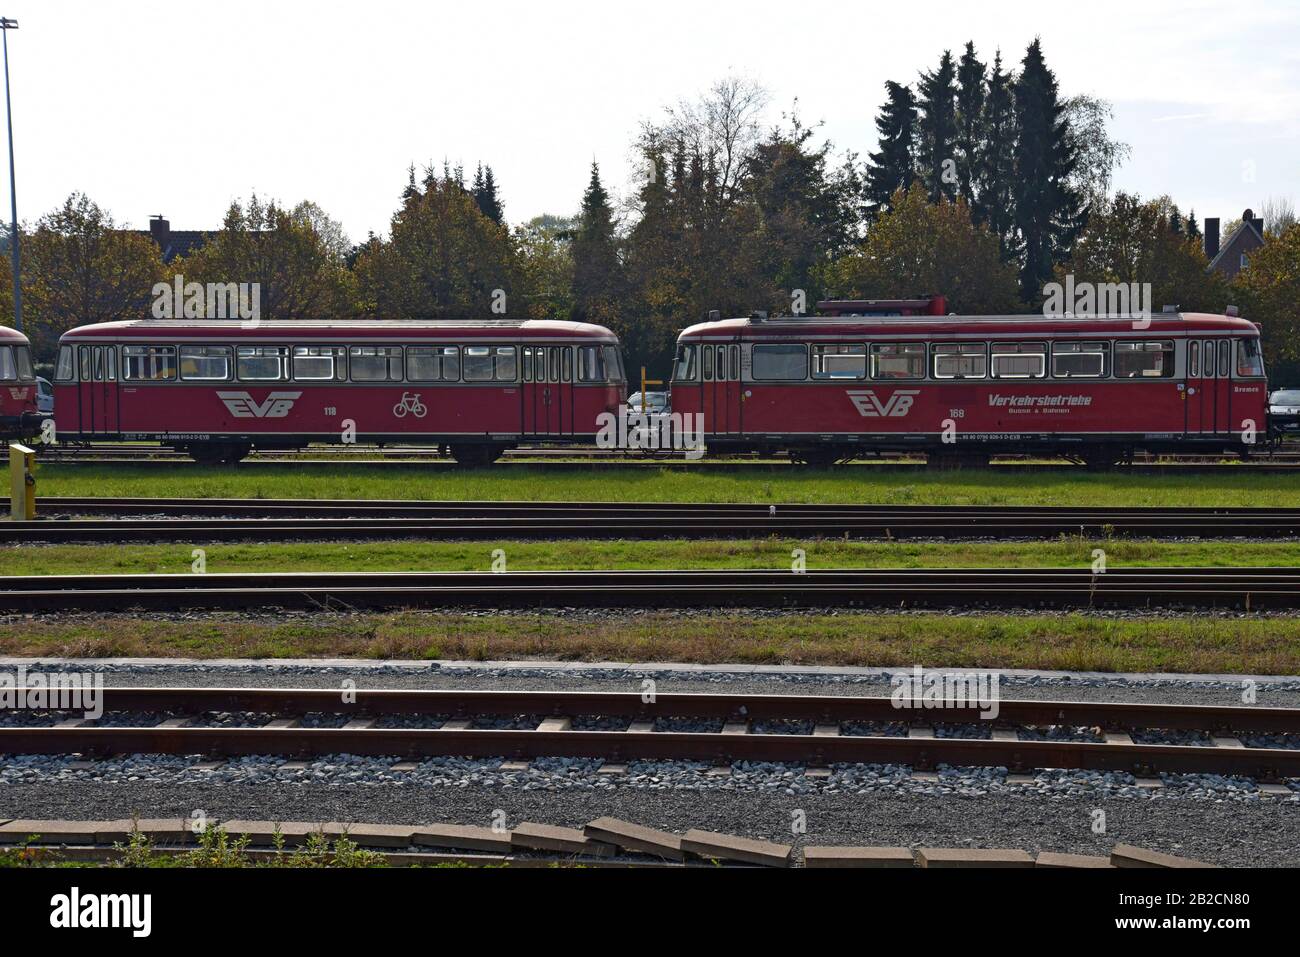 Vintage Deutsche Bahn railcars parked in a siding at Bremervorde, Germany. October 2019Bremervorde, Germany Stock Photo